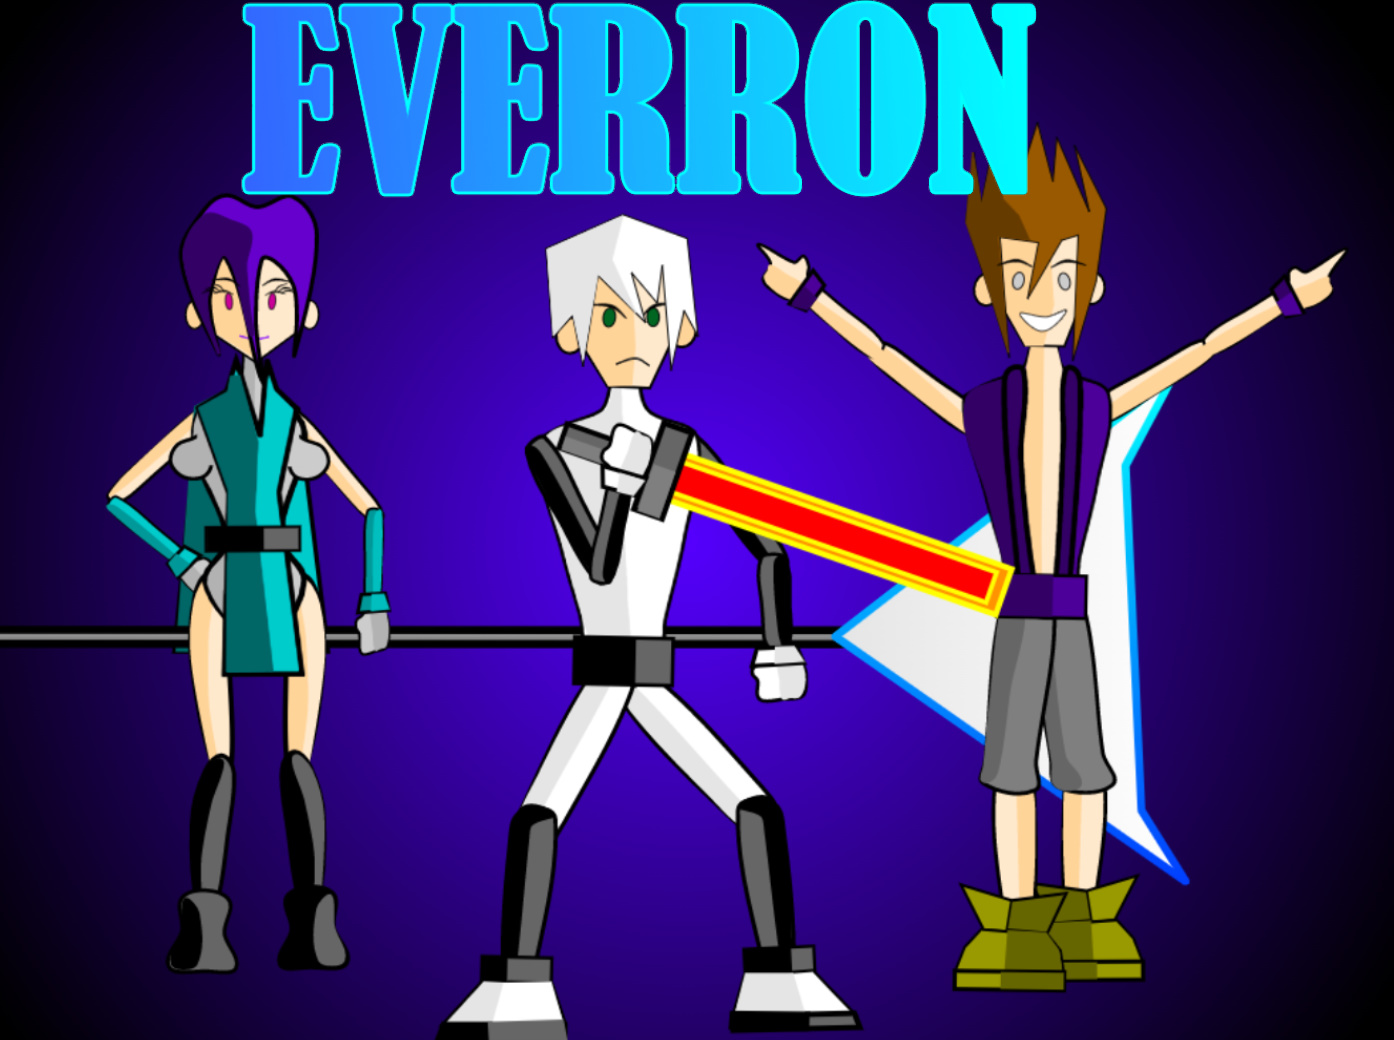 Everron